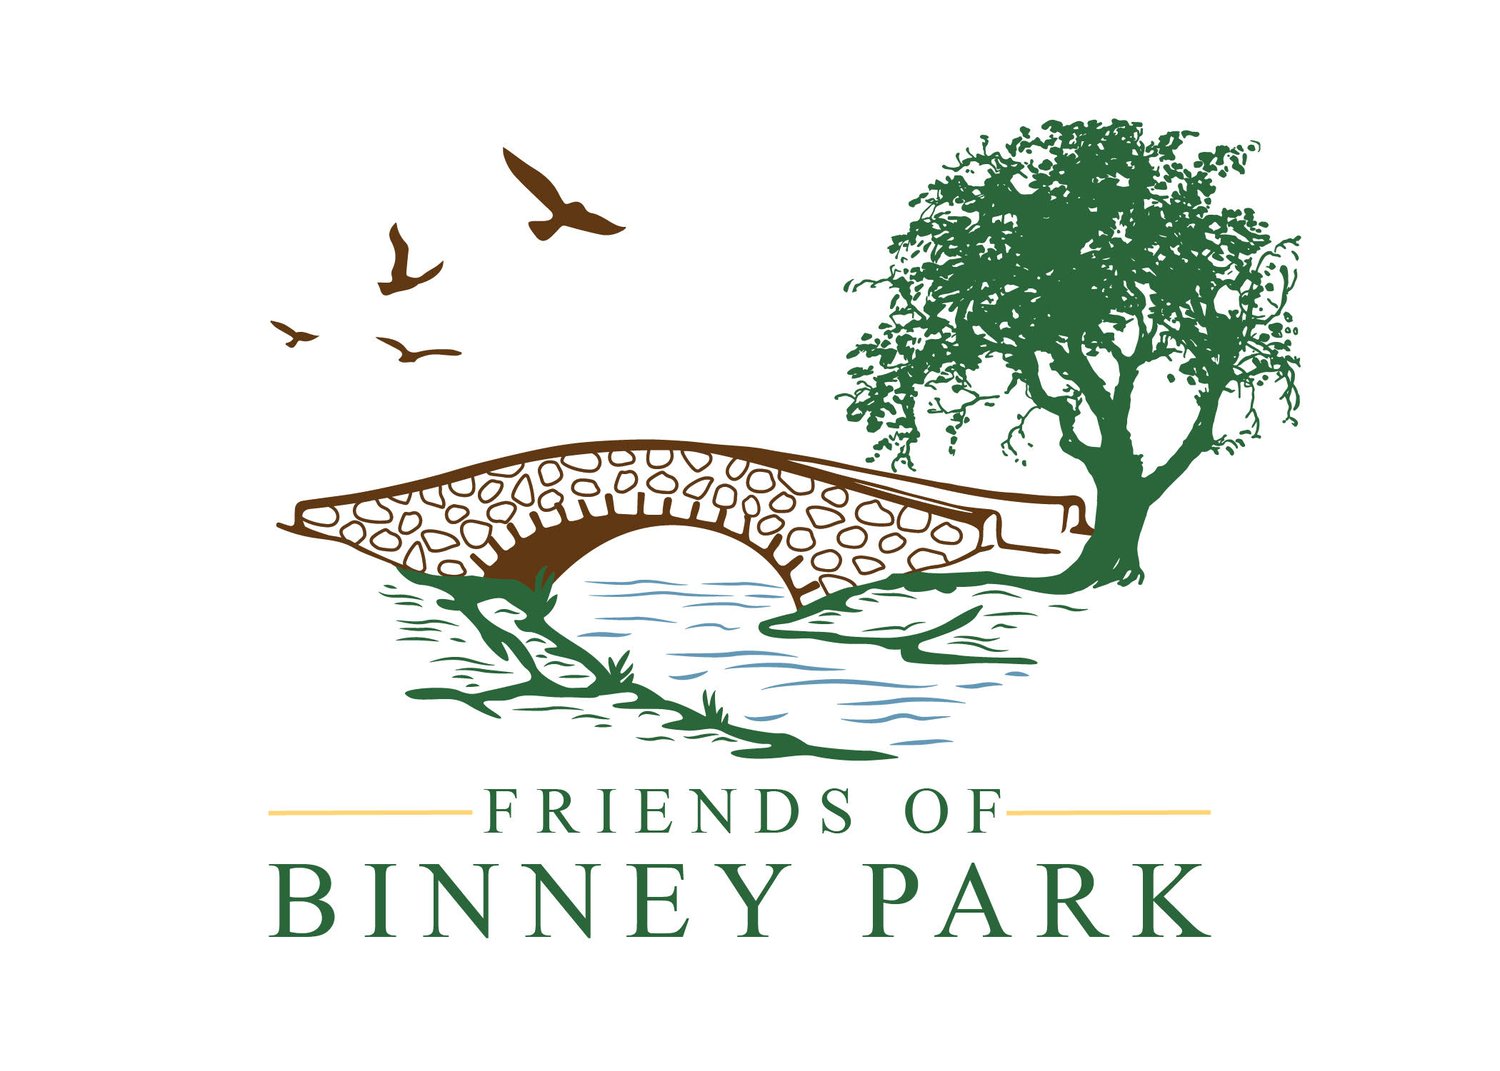 Friends of Binney Park